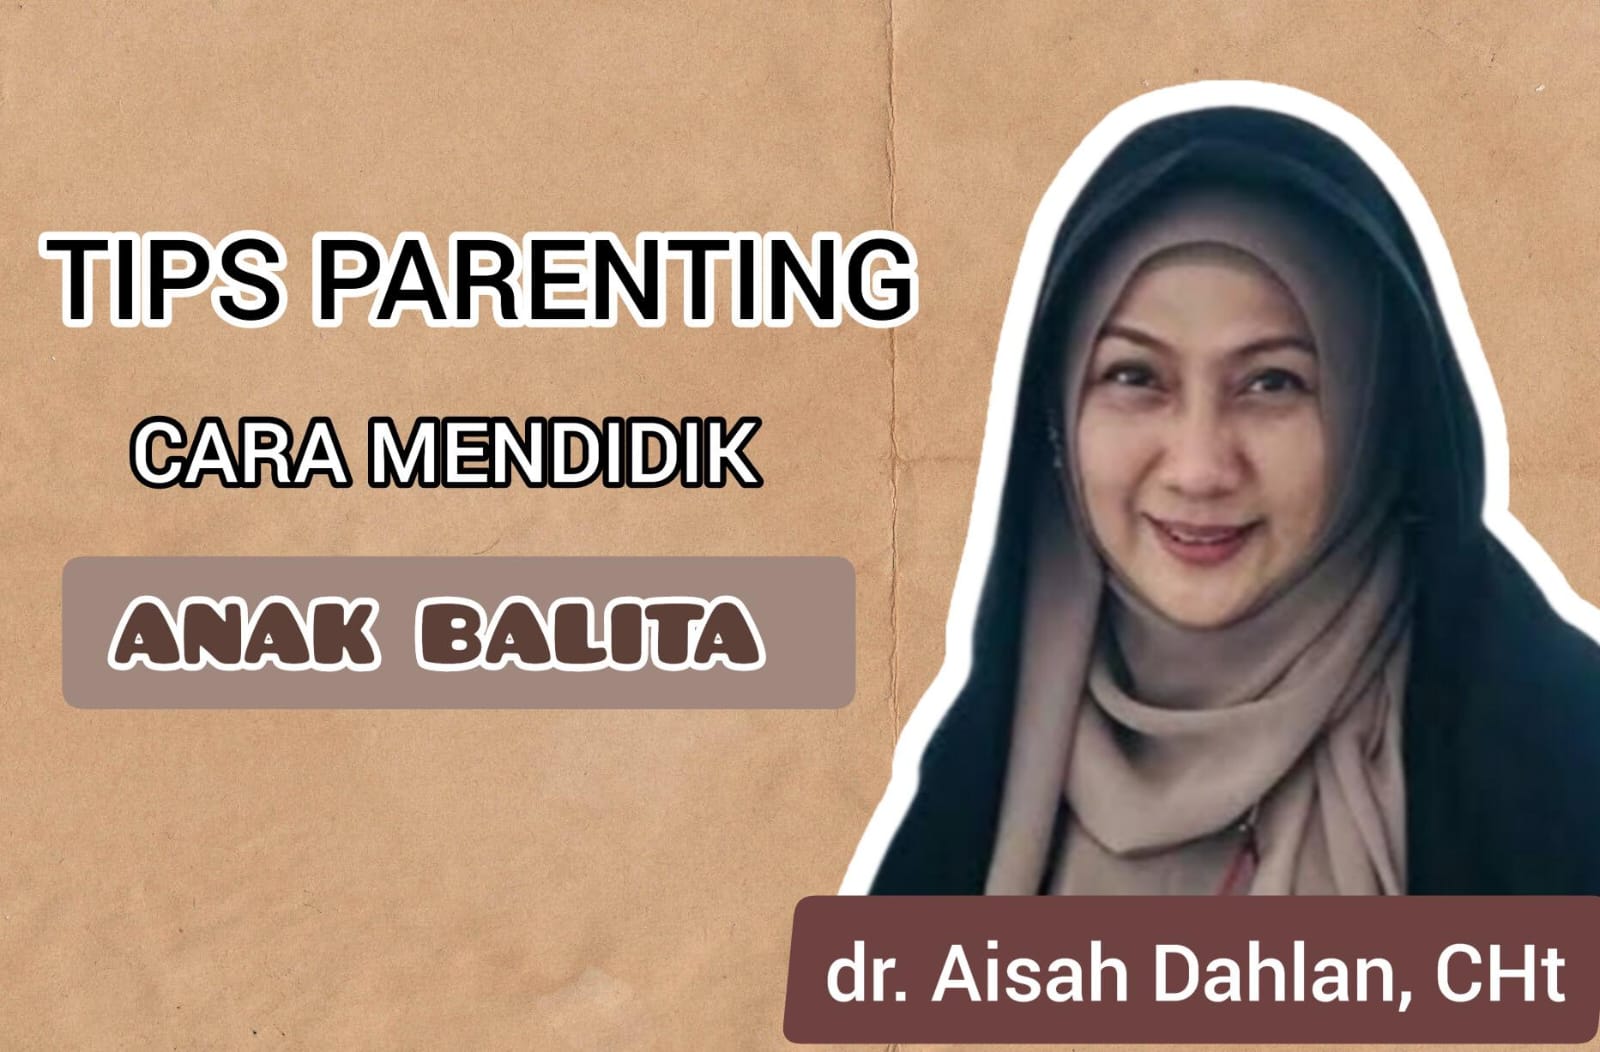 Perhatian untuk Para Orang Tua, Begini Tips Parenting Mendidik Anak Balita Menurut dr Aisah Dahlan